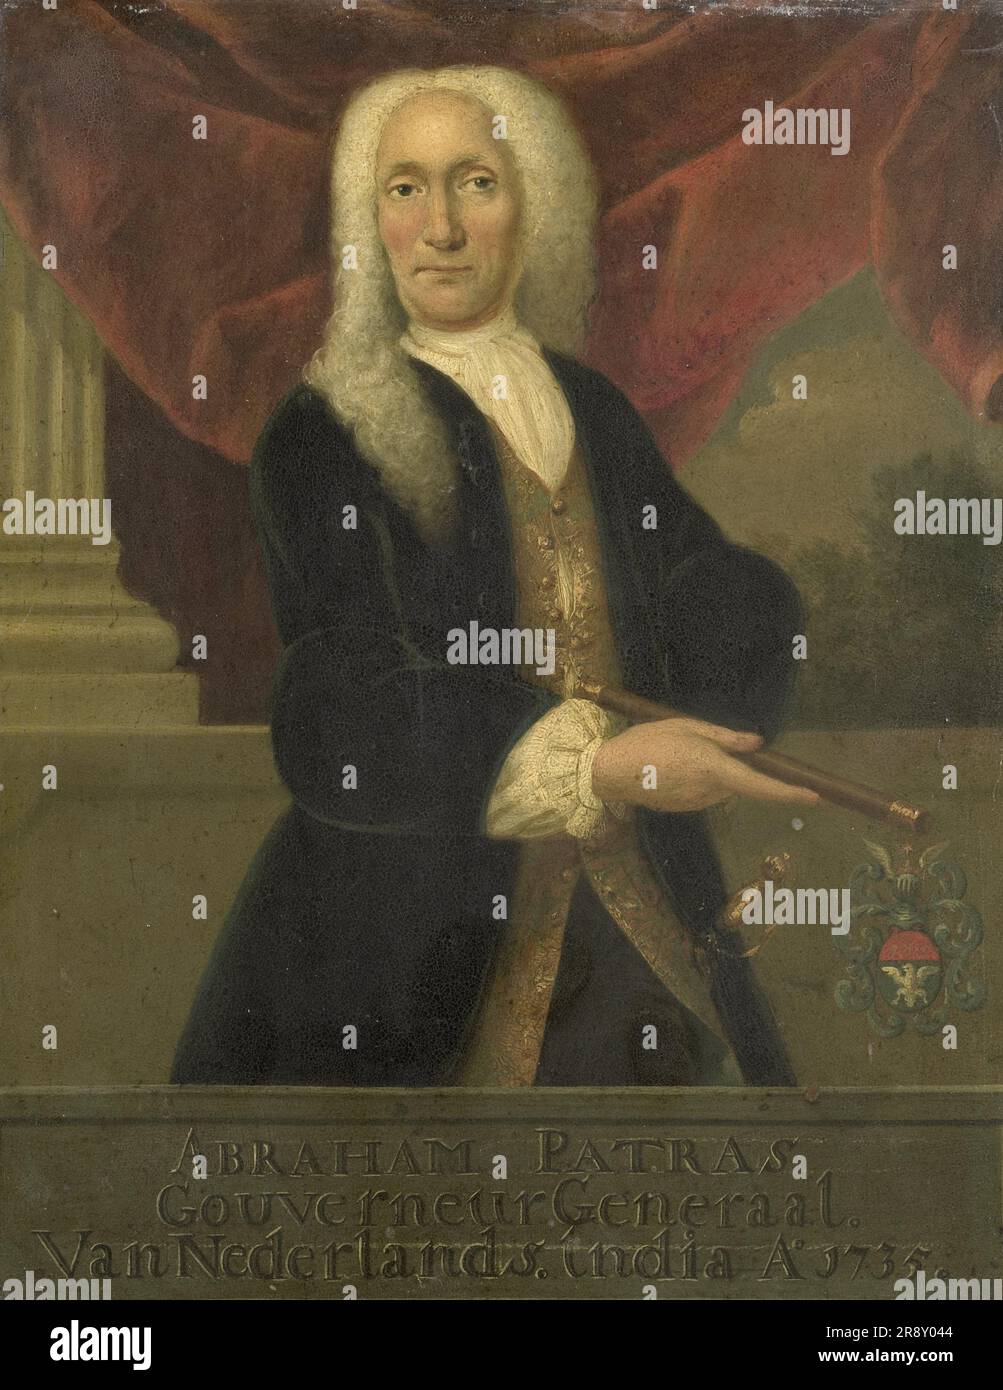 Portrait d'Abraham Patras, Gouverneur général de la Dutch East India Company, 1735-1800. Banque D'Images